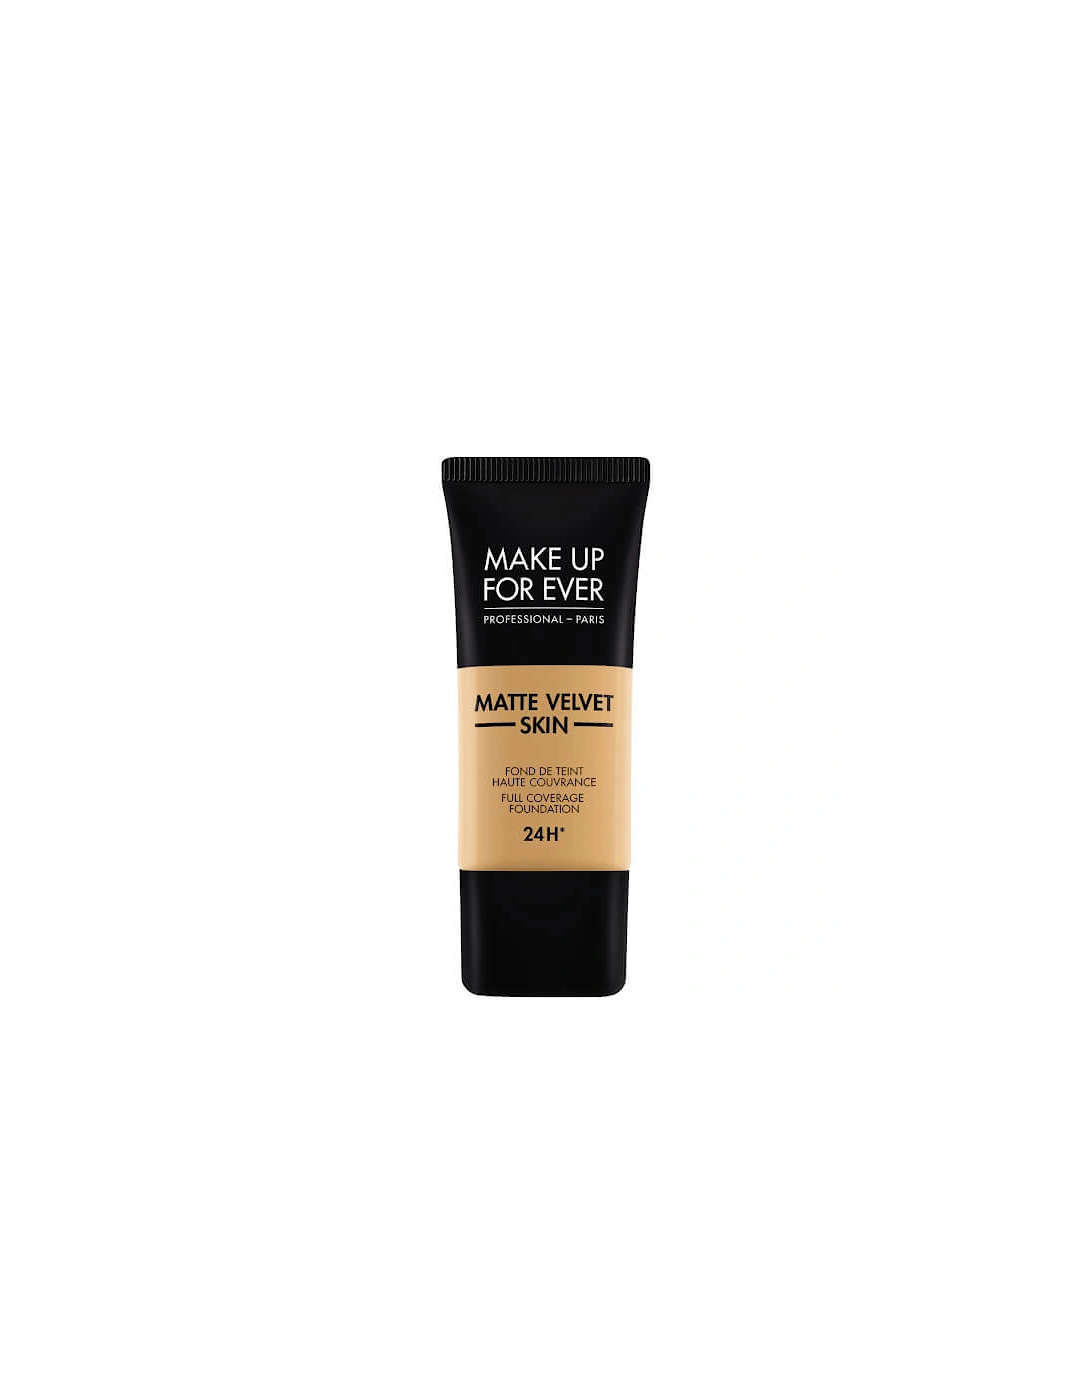 Matte Velvet Skin Foundation - 405 Golden honey, 2 of 1